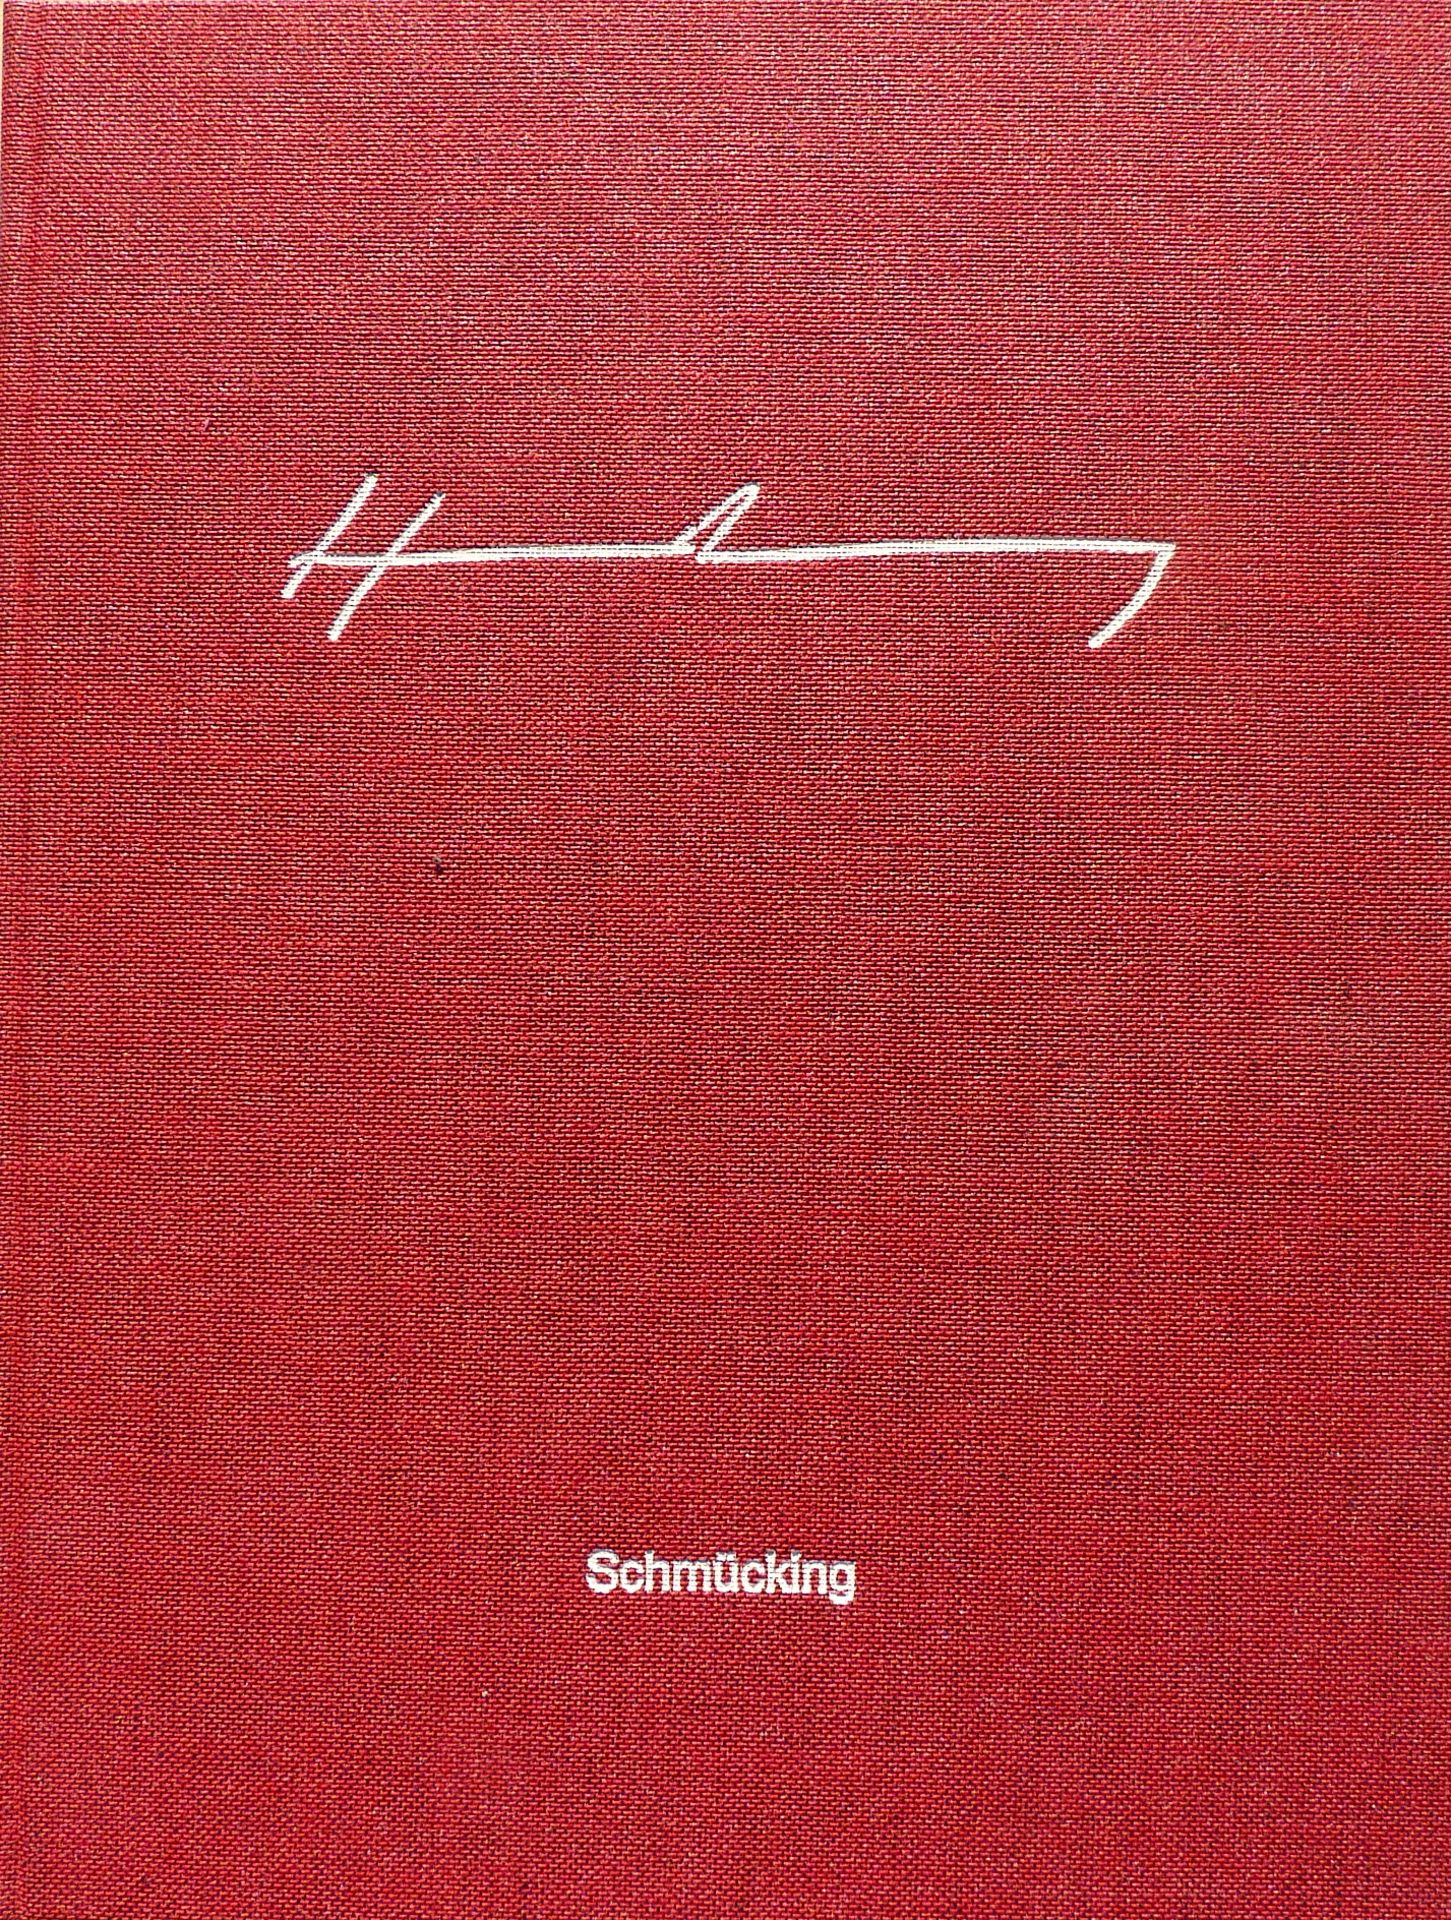 HARTUNG, HANS: "Das Graphische Werk 1921-1965", 1965/90